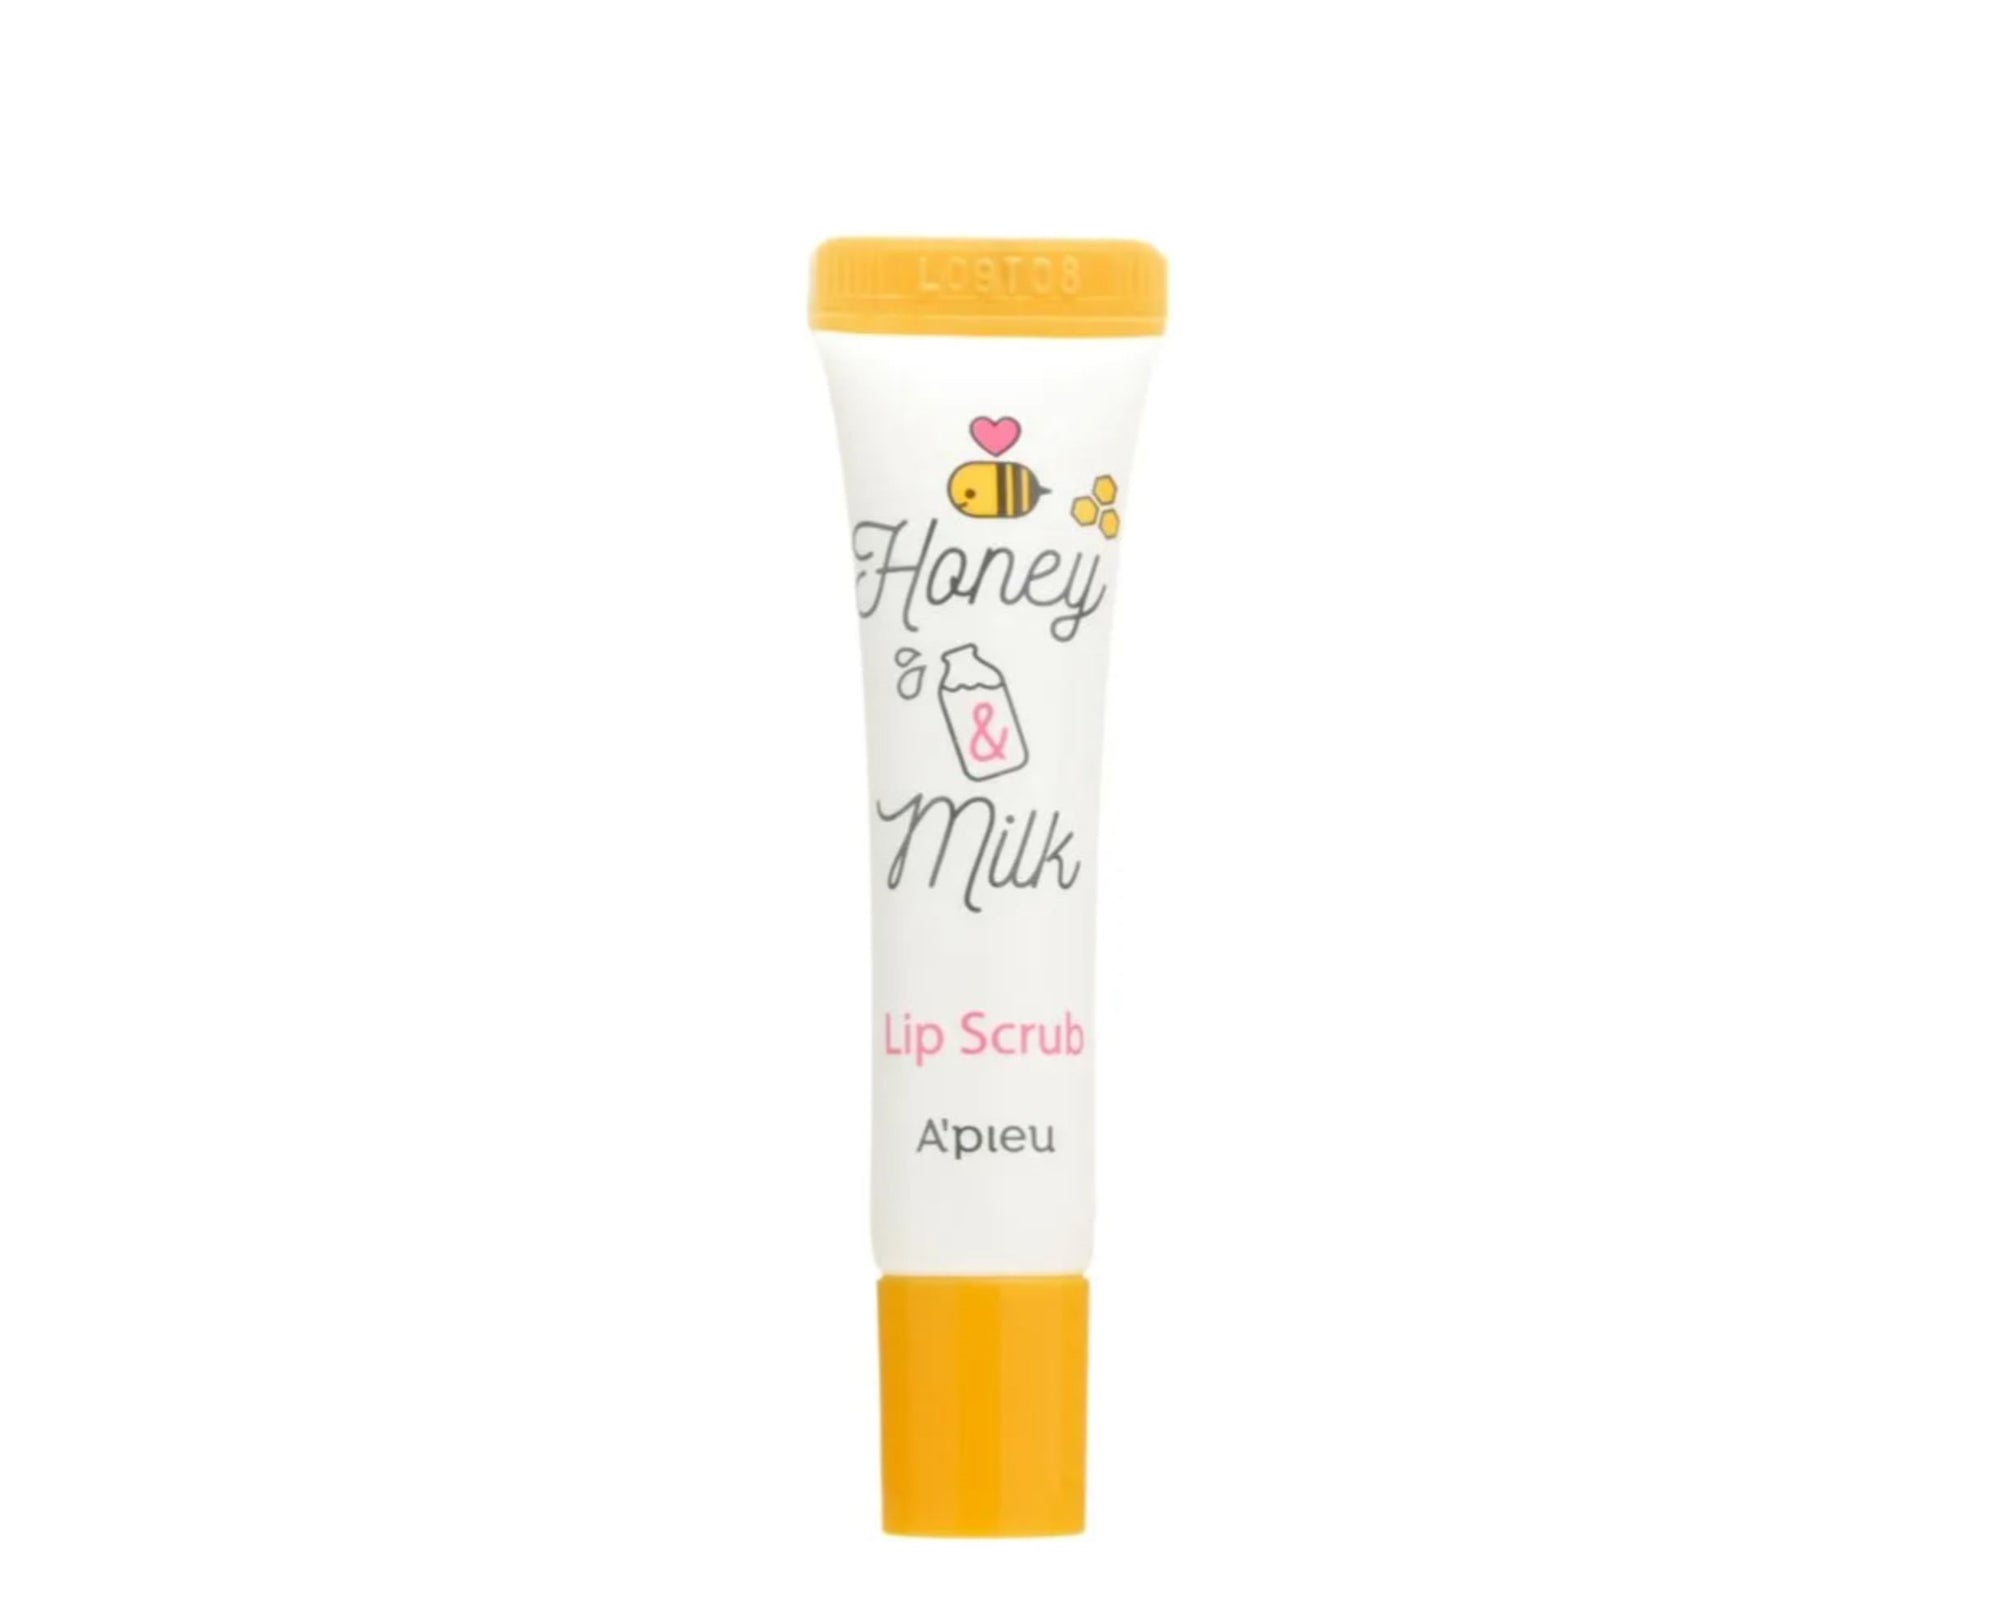 Honey & Milk Lip Scrub